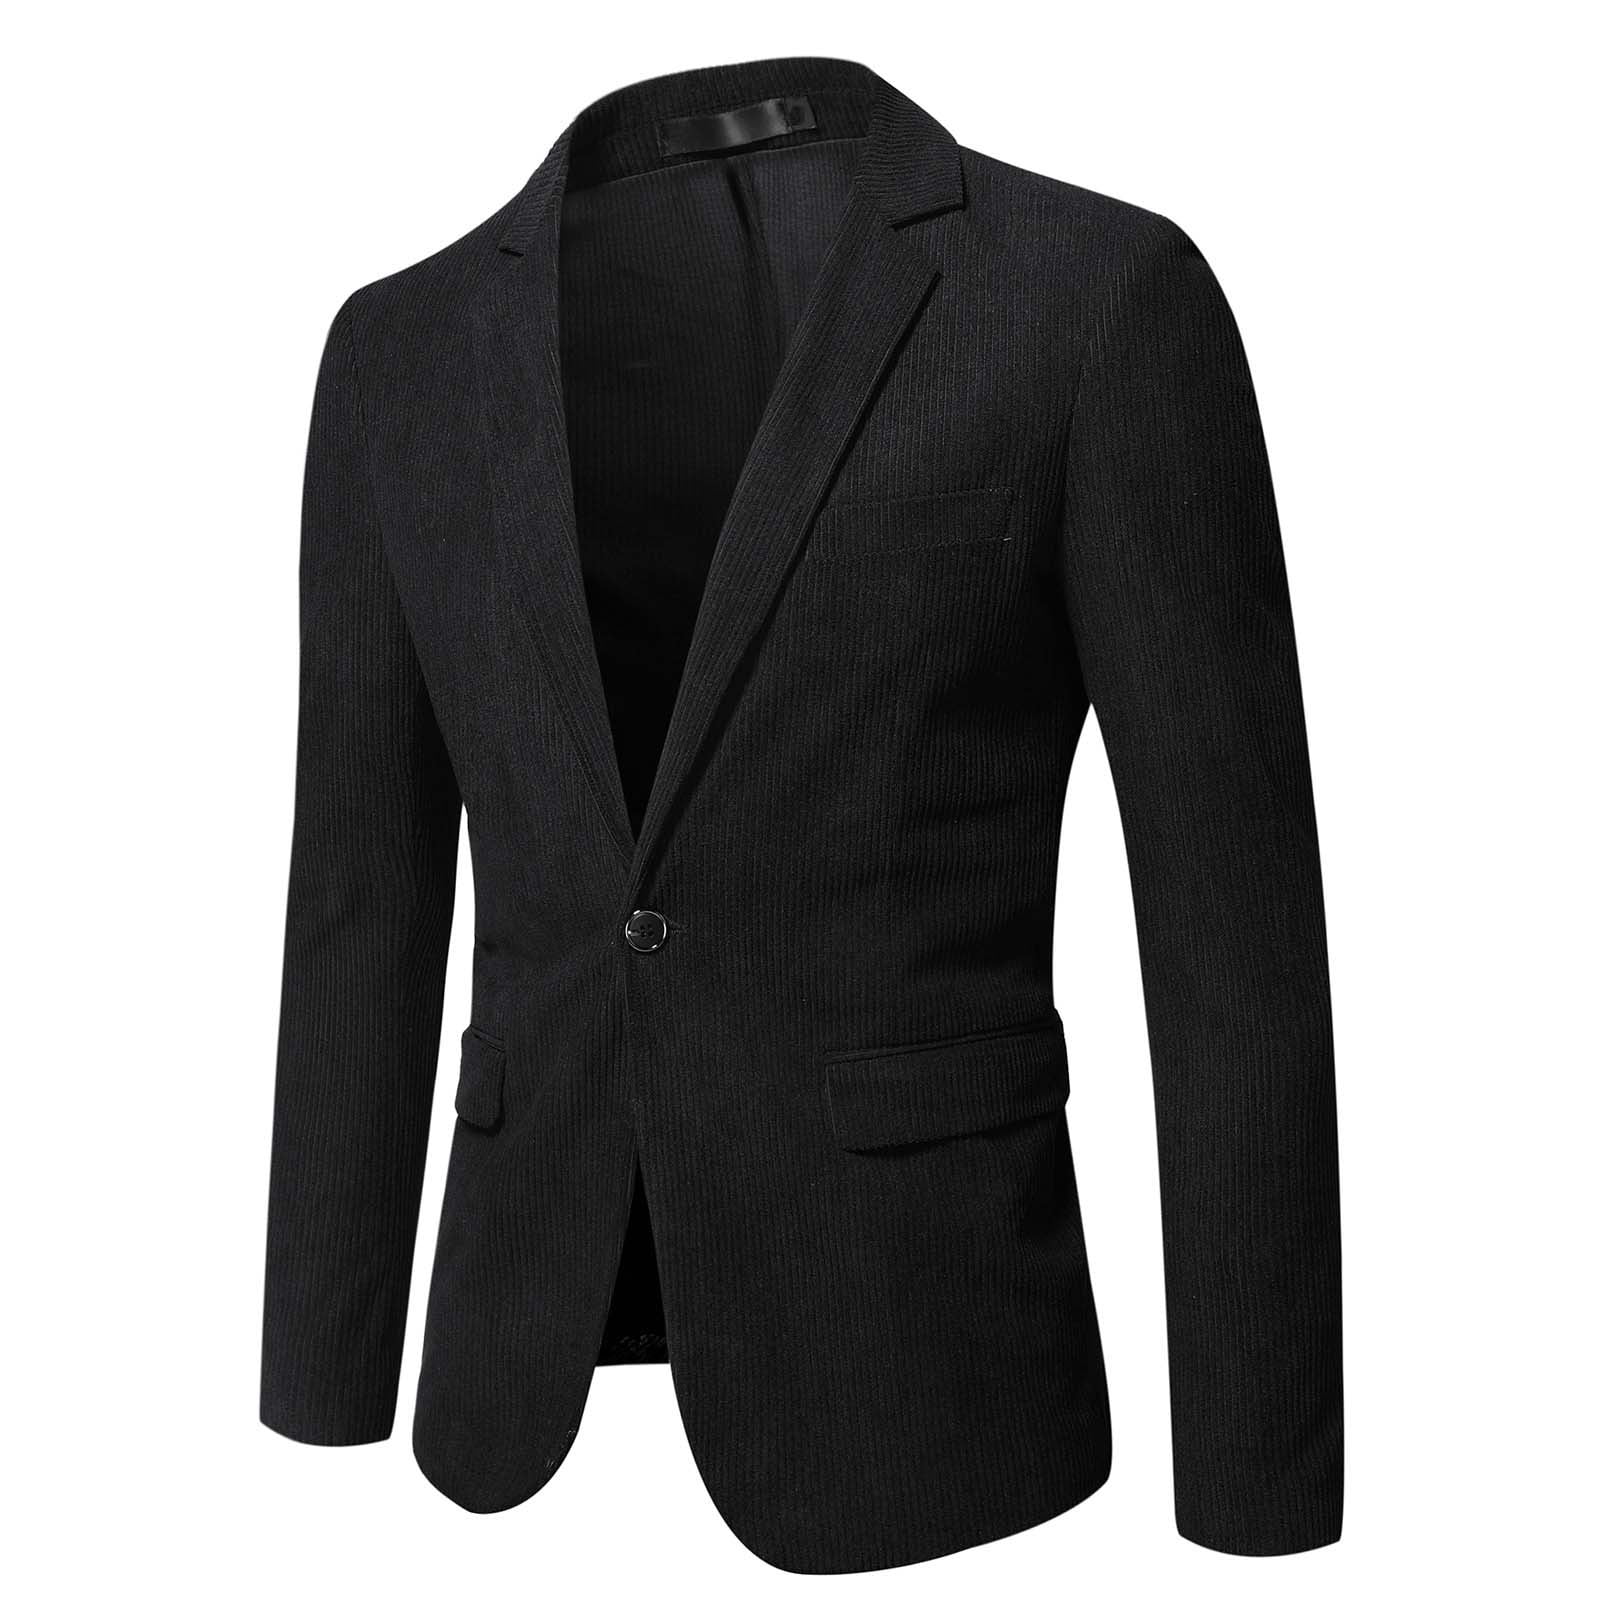 Zodggu Blazers Suit Jacket for Men Office Lightweight Lapel Collar ...